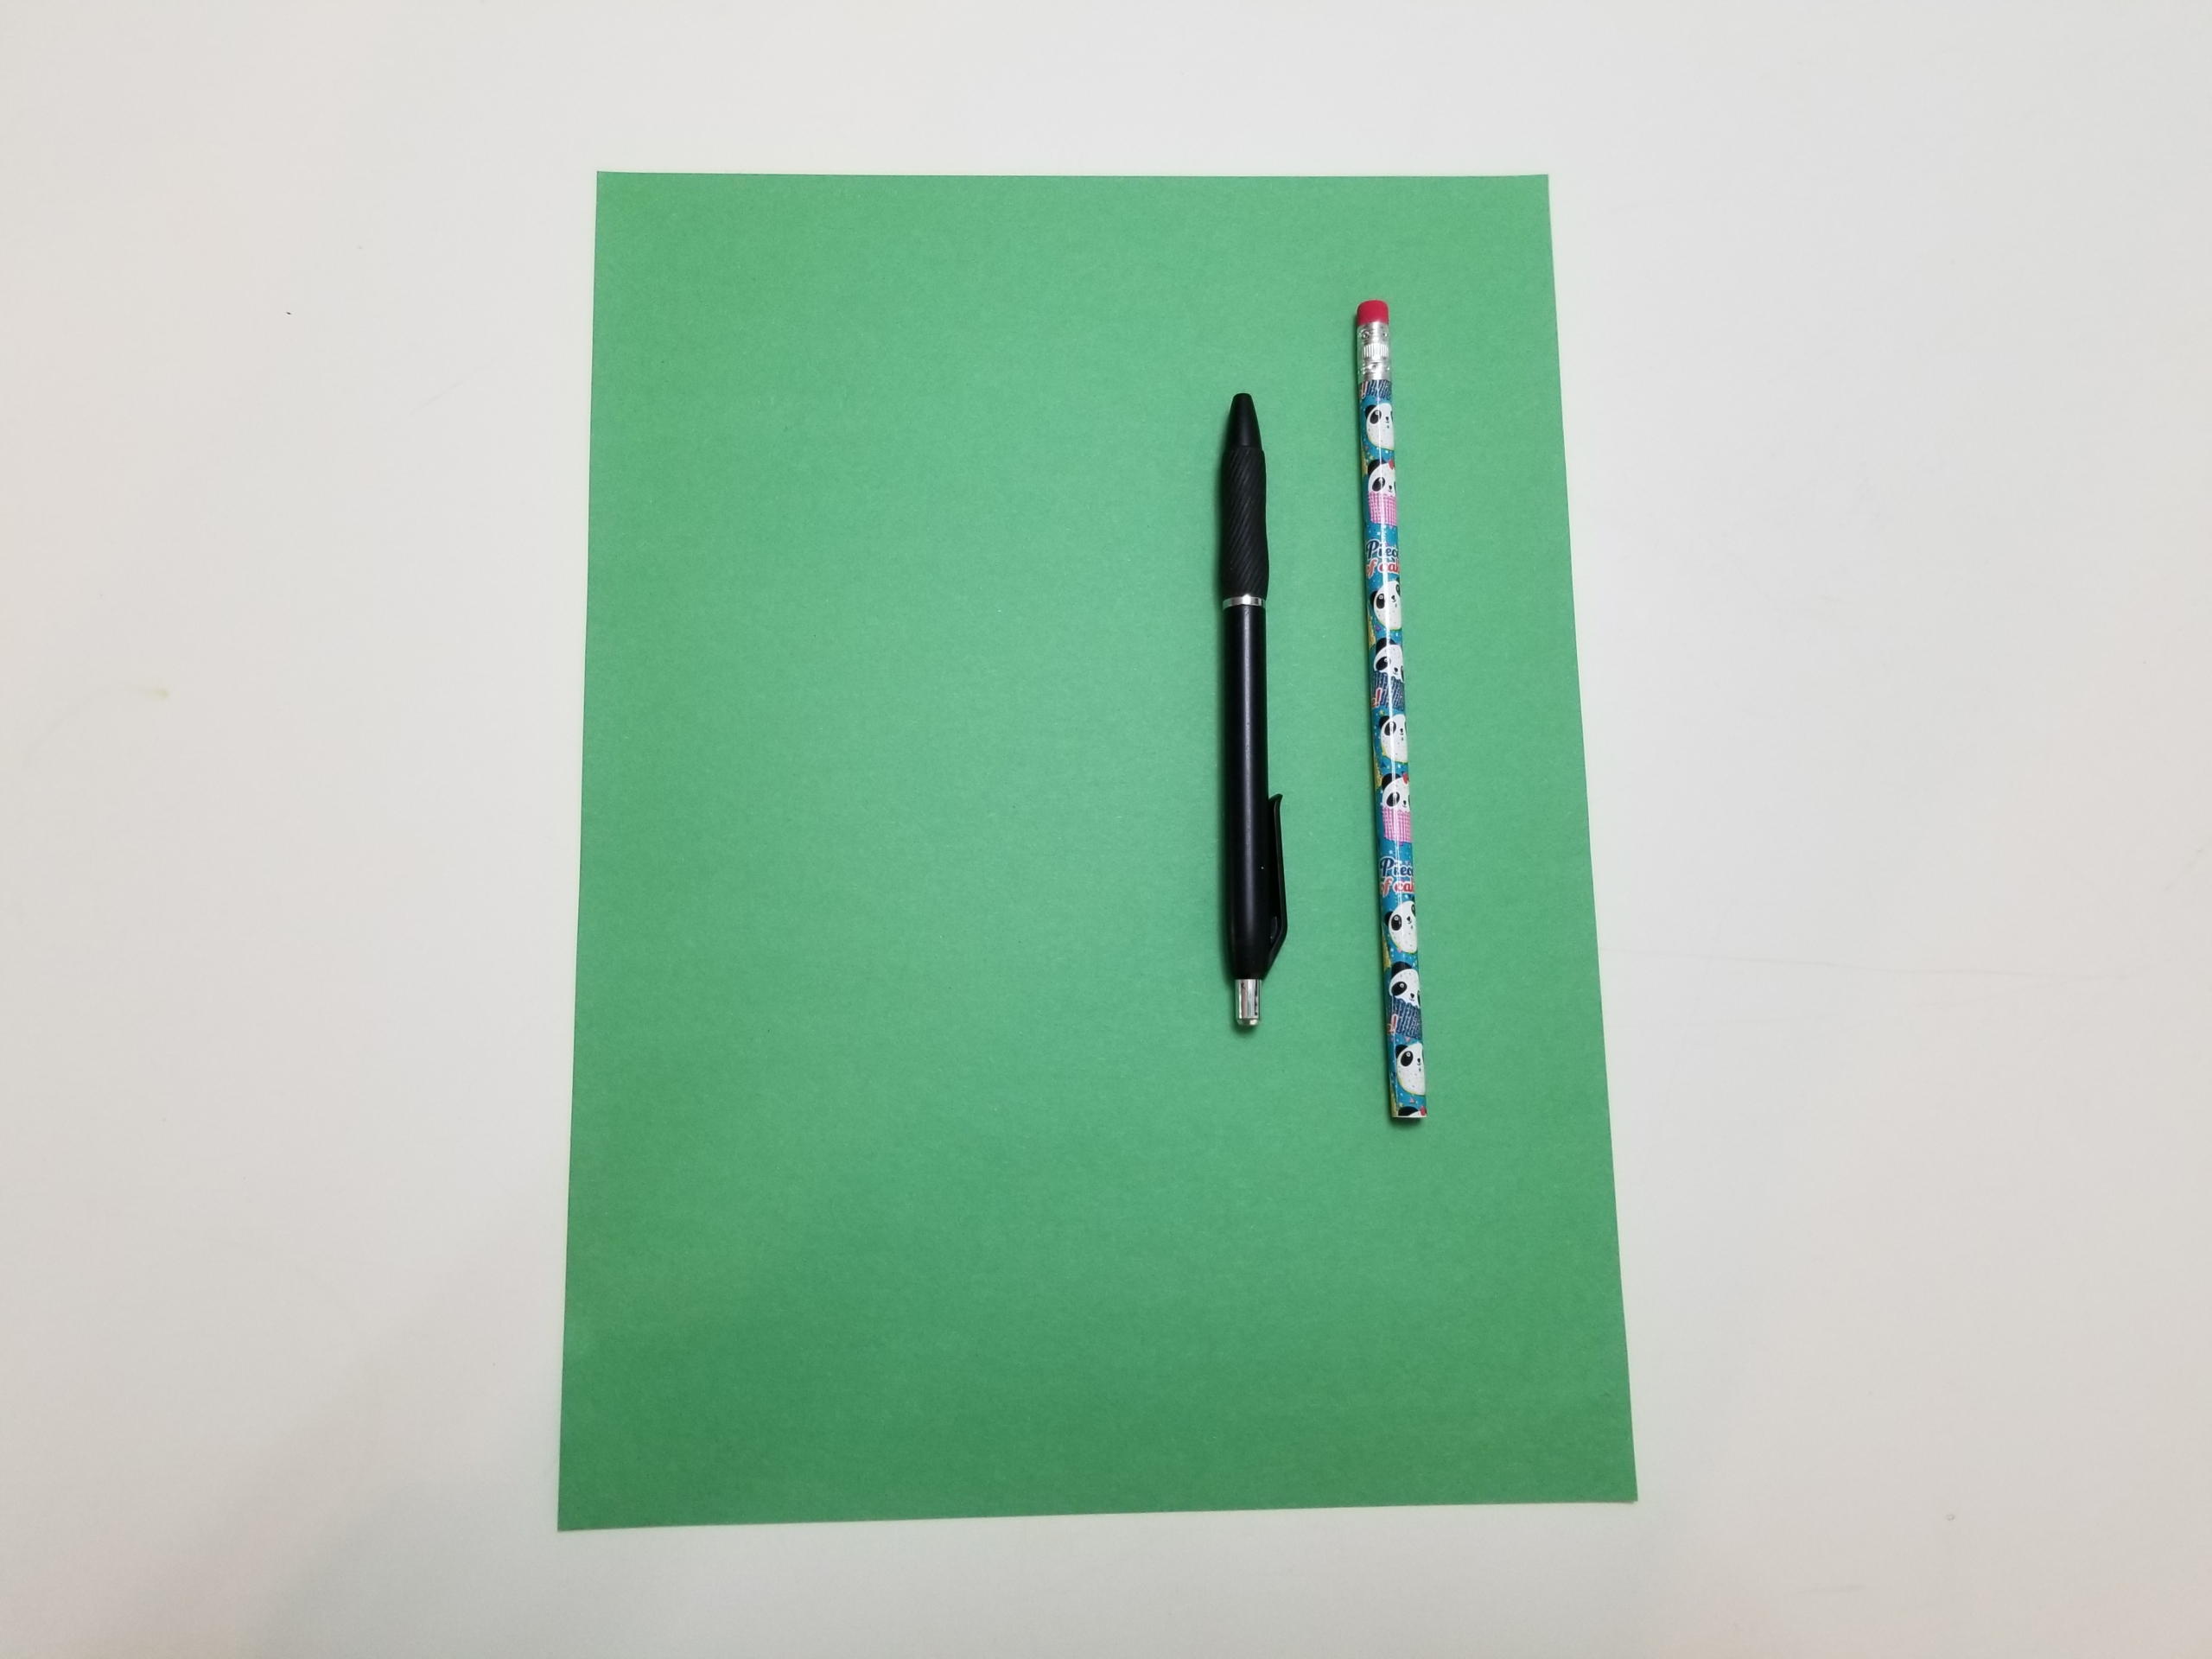 Construction paper, pencil, pen